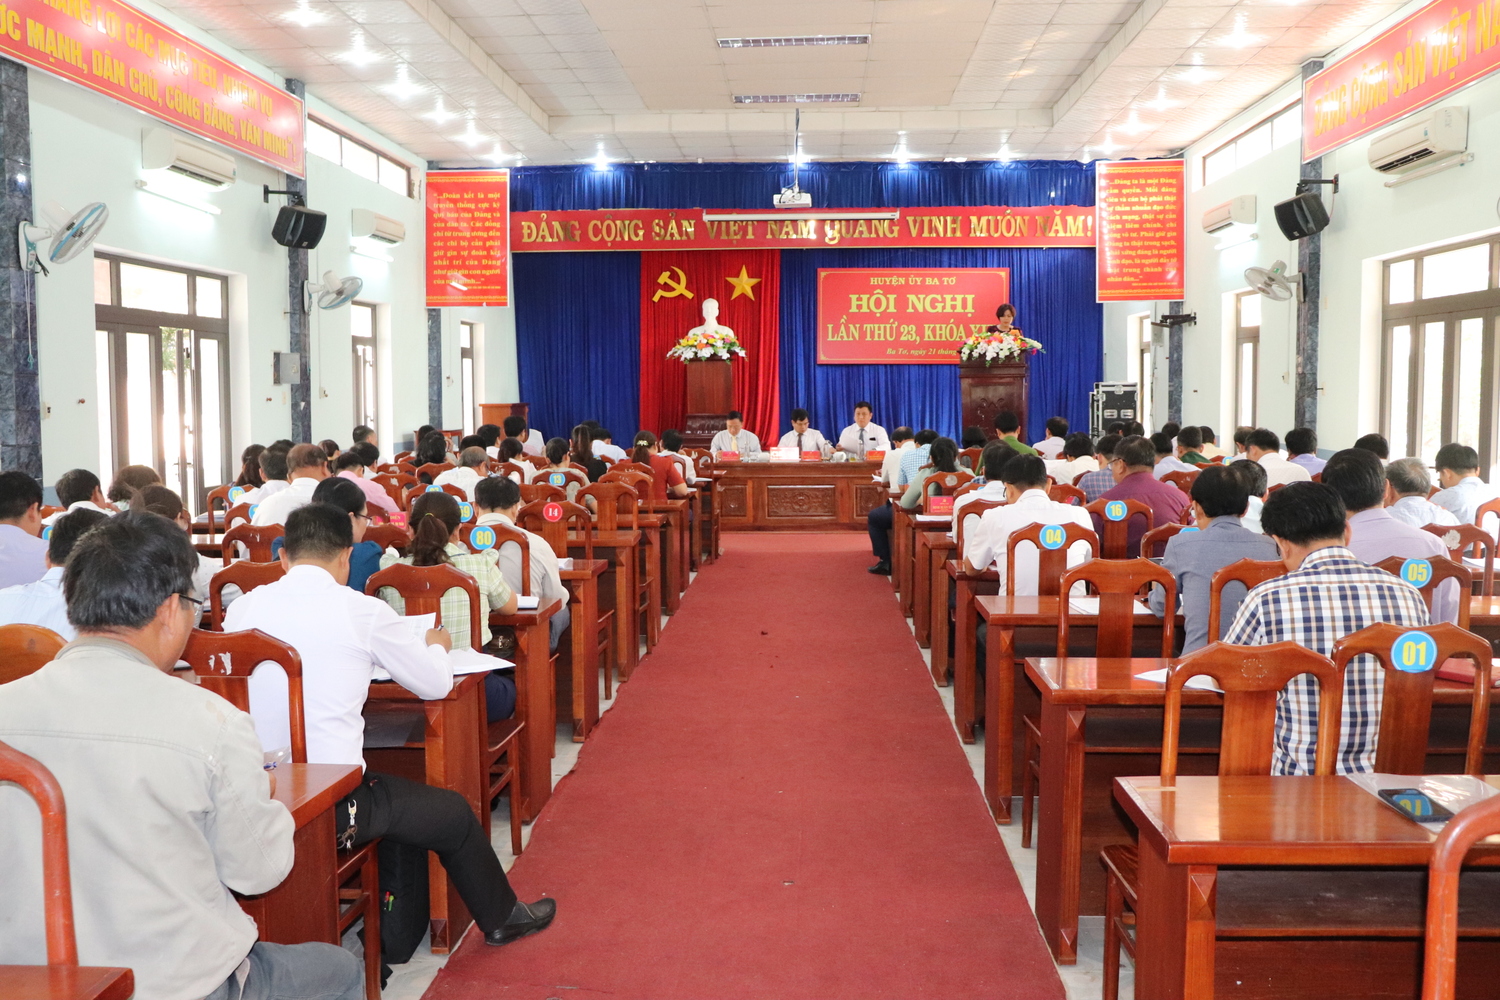 Huyện ủy Ba Tơ tổ chức Hội nghị lần thứ 23, khóa XIX